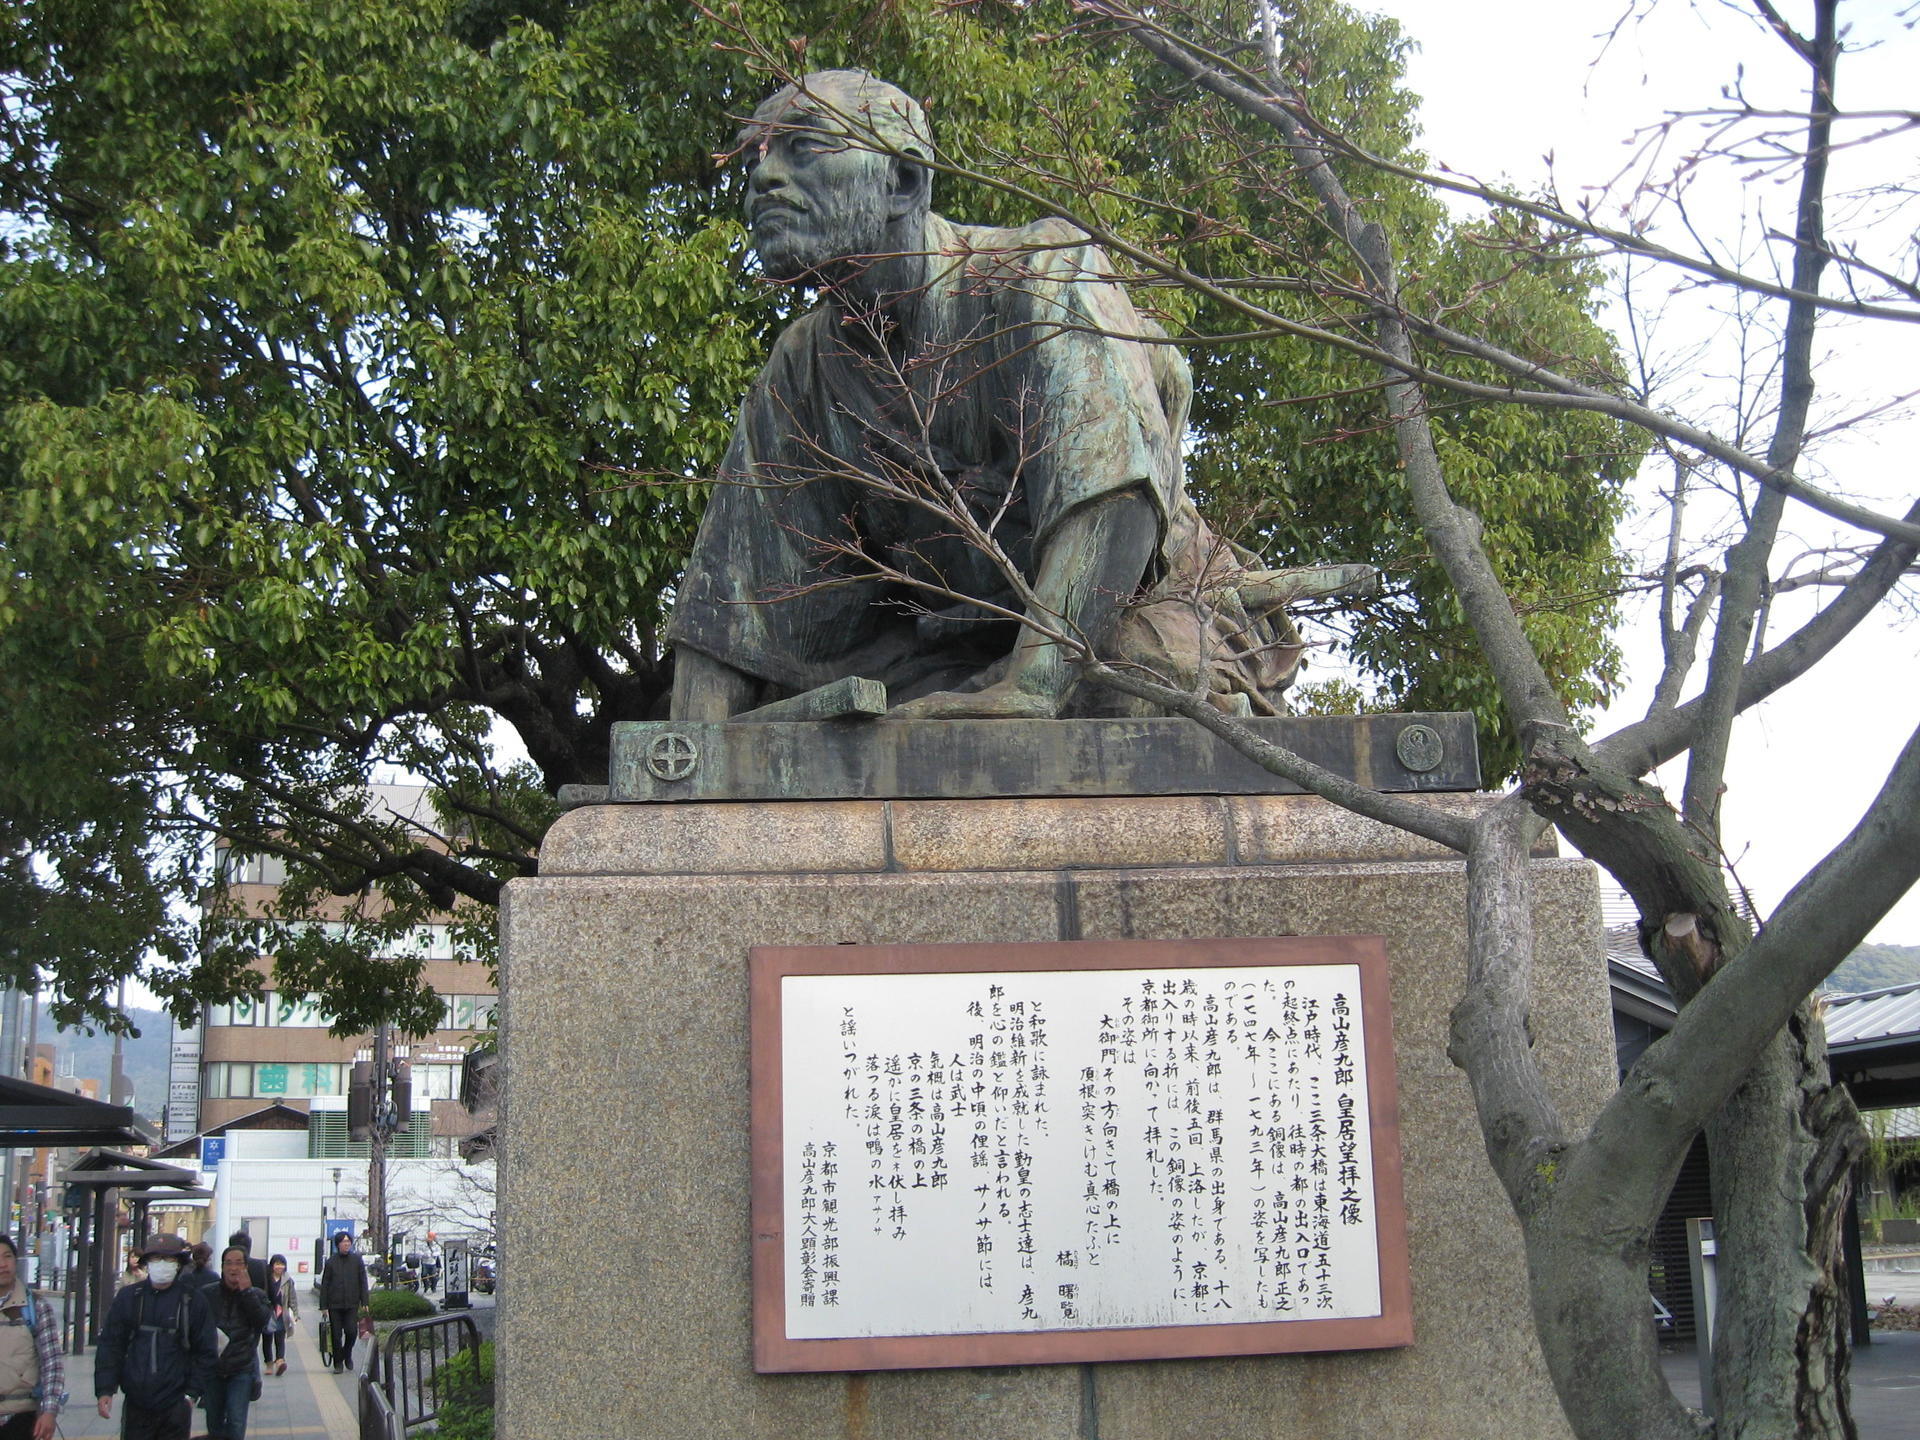 京都史蹟散策22 高山彦九郎 皇居望拝の像: 資料の京都史蹟散策